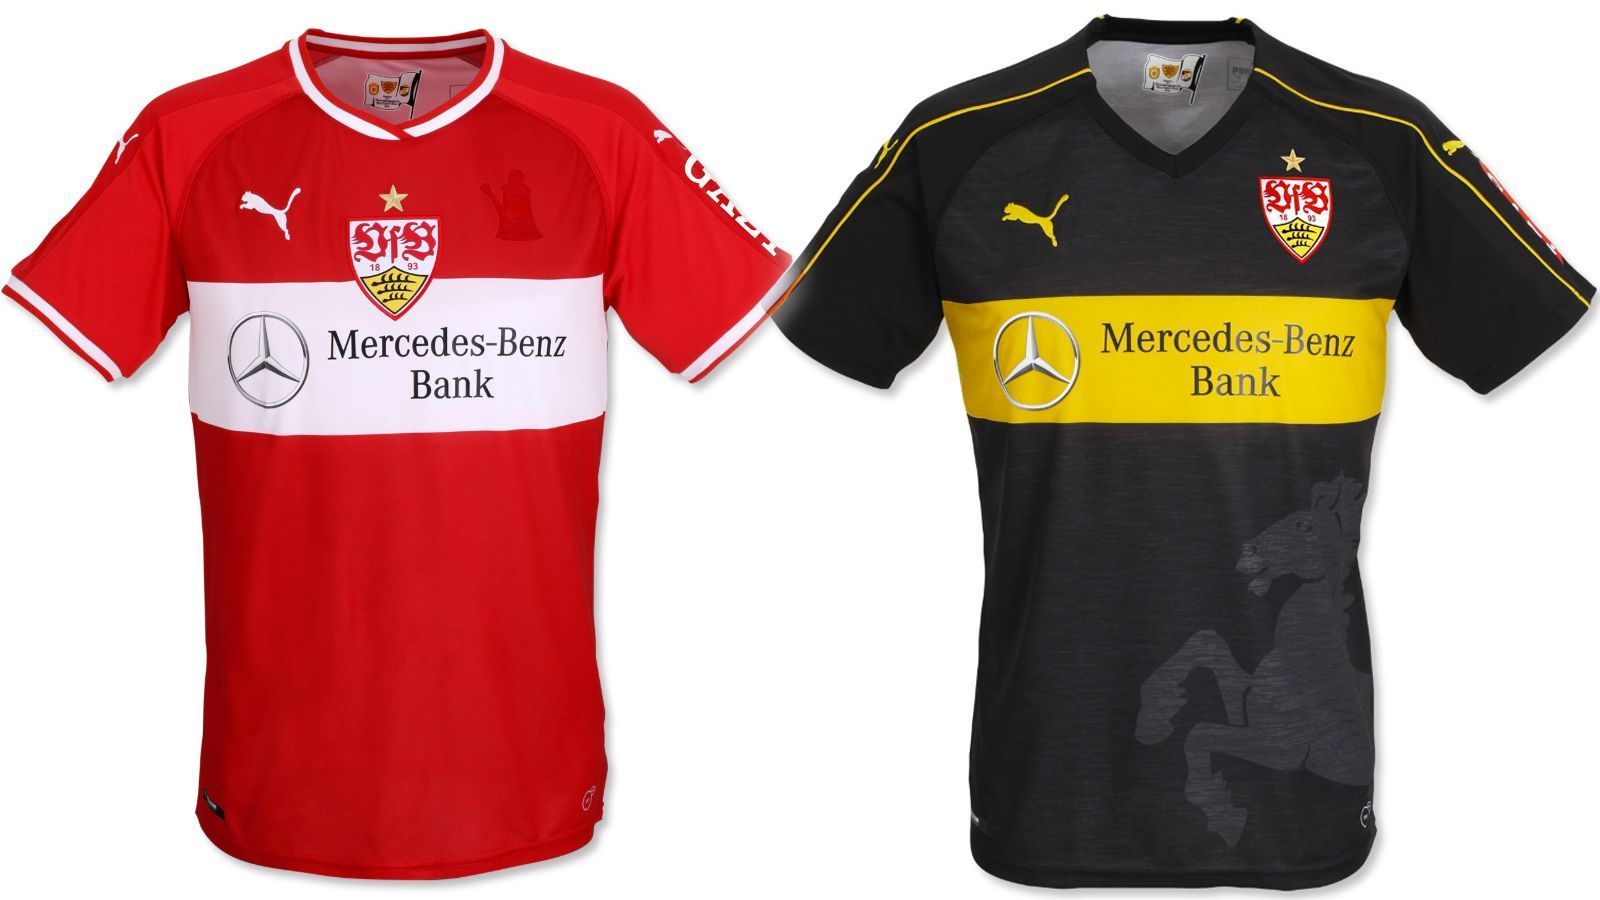 
                <strong>VfB Stuttgart</strong><br>
                Heim- (weiß-rot) und Auswärtstrikot (rot-weiß) unterscheiden sich beim VfB kaum. Das Heimdress ist praktisch das Gegenstück zum Auswärtstrikot. Zum 125-jährigen Jubiläum prangt das Wappen mittig auf der Brust. Dafür ist das Ausweichtrikot in den Stuttgarter Stadtfarben schwarz und gelb eine Neuheit.
              